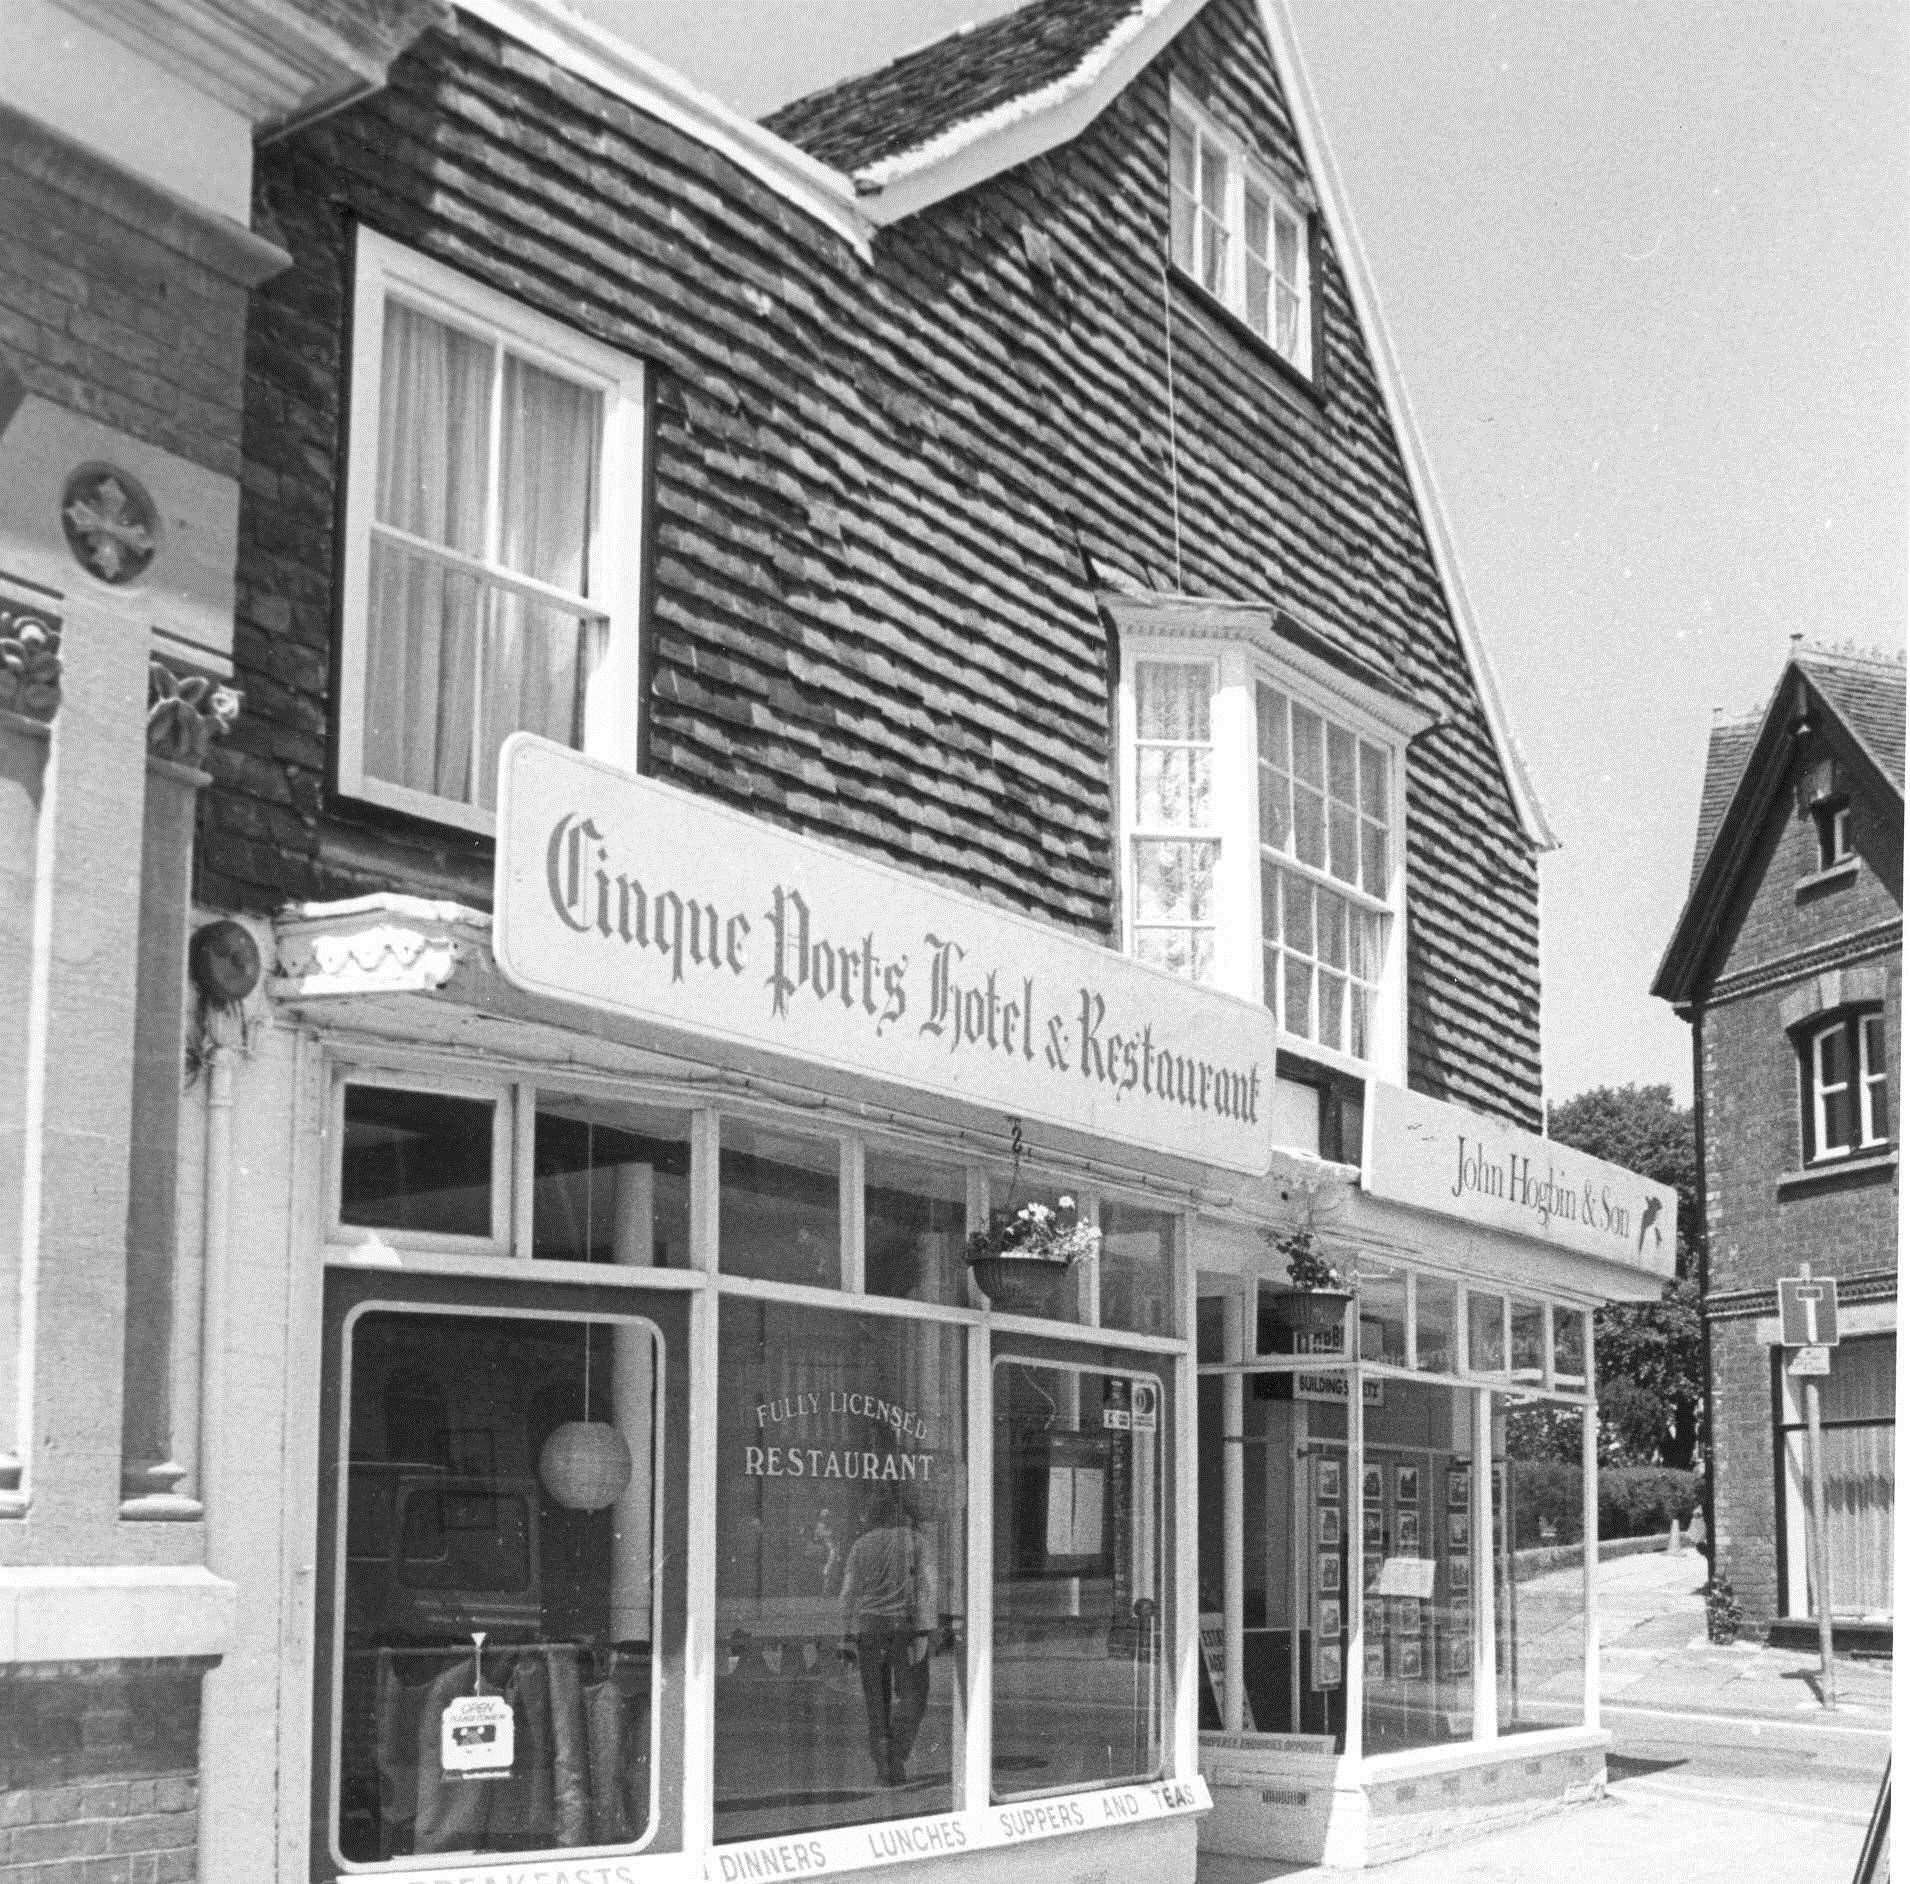 Cinque Ports Hotel & Restaurant in Tenterden - July 1981